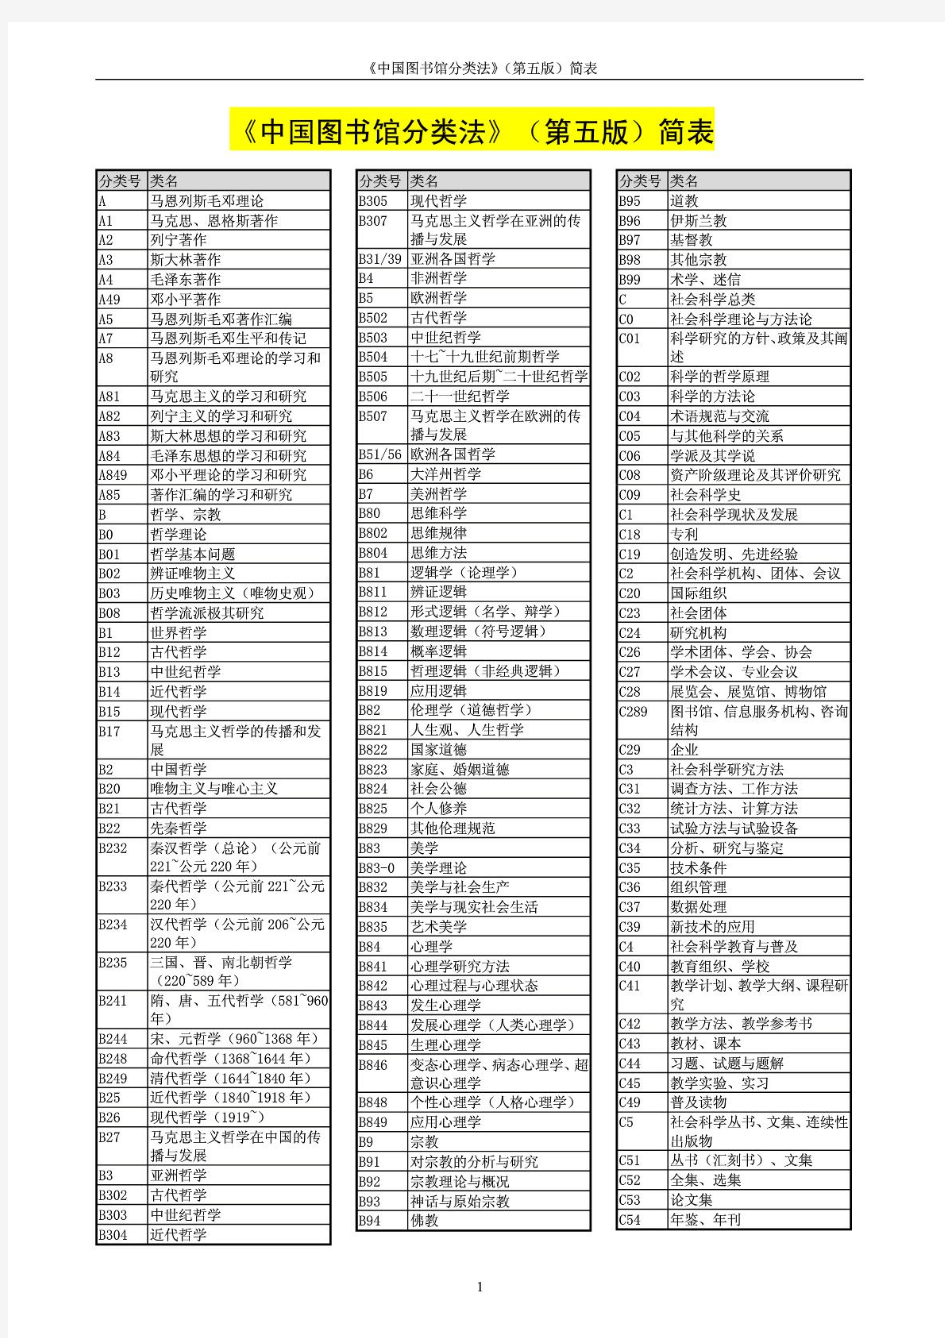 中国图书馆分类法(第五版)简表